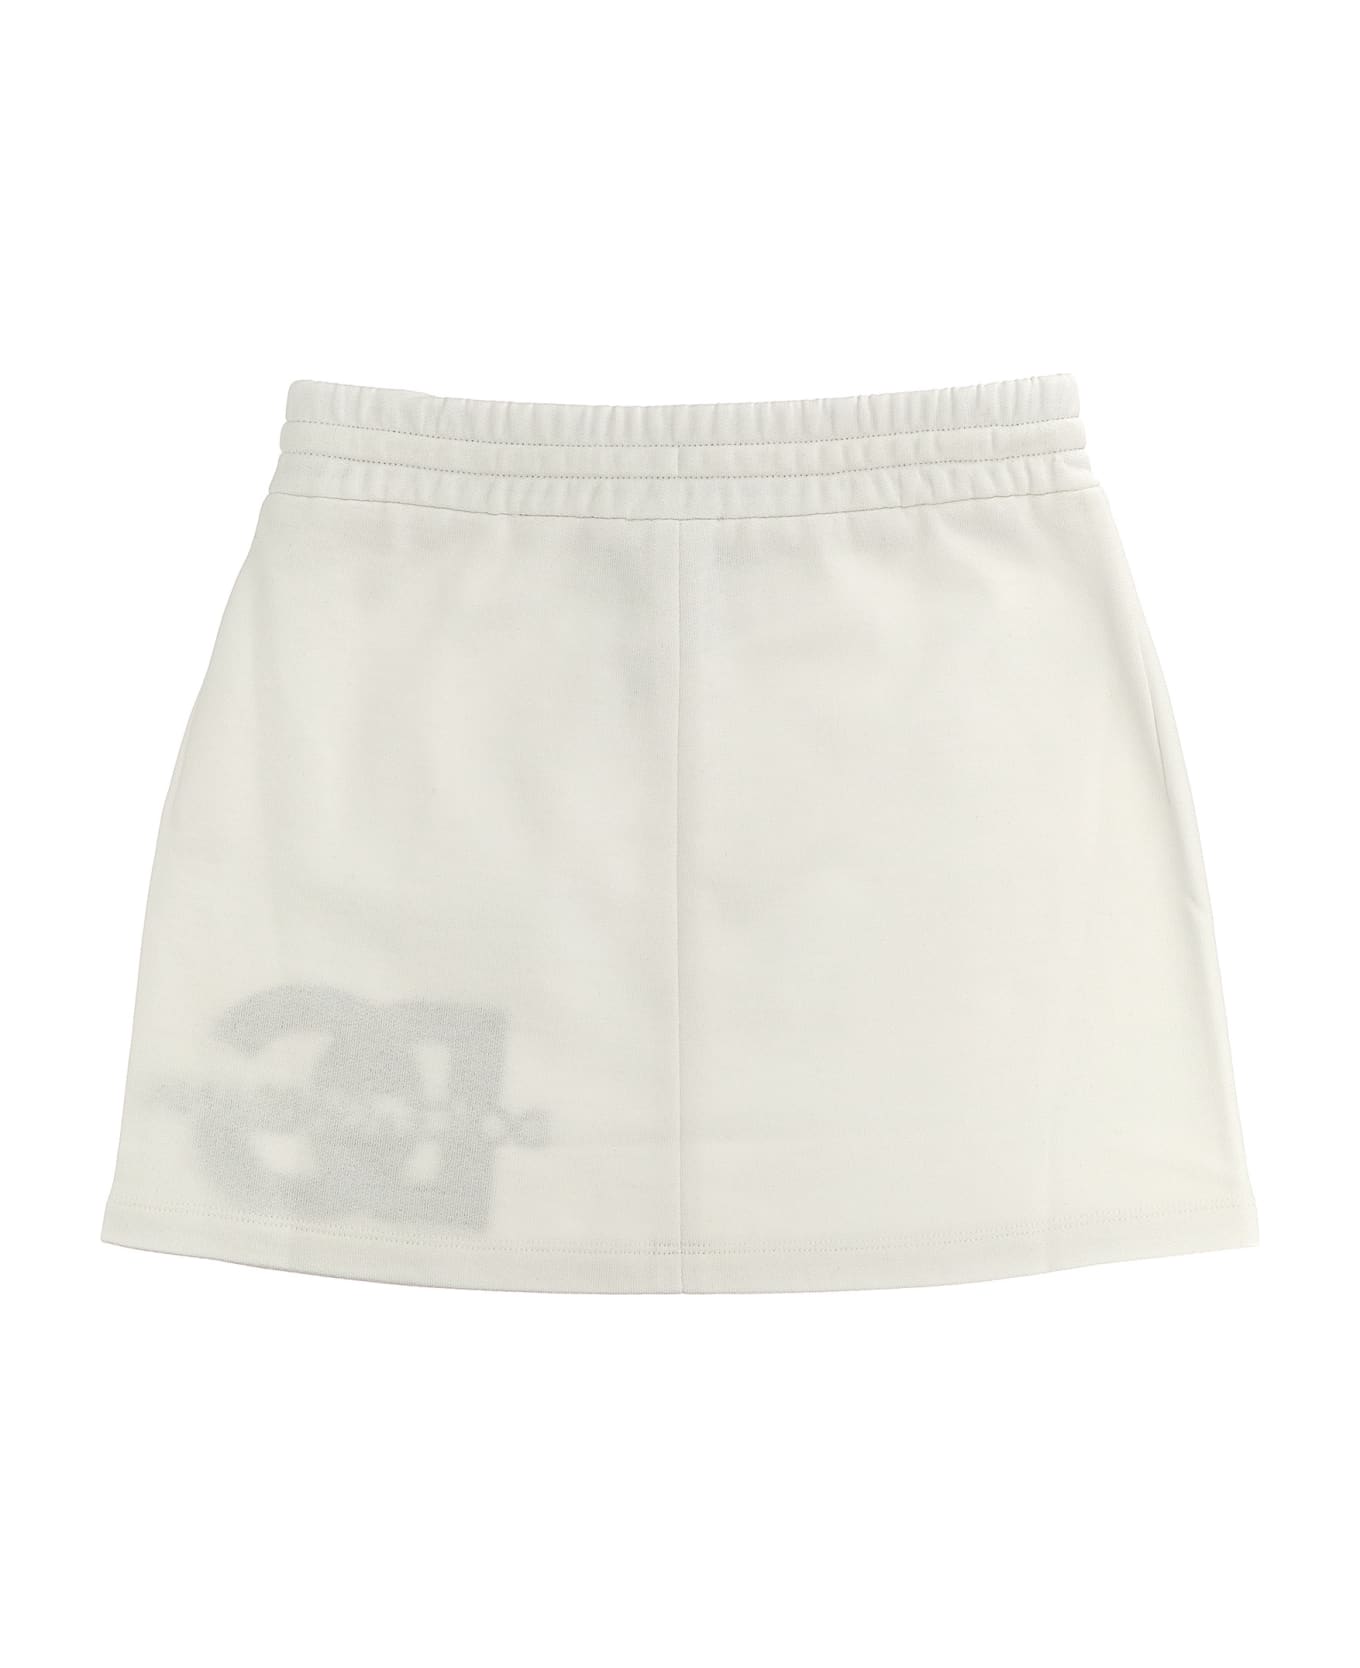 Dolce & Gabbana Mini Skirt - White/Black